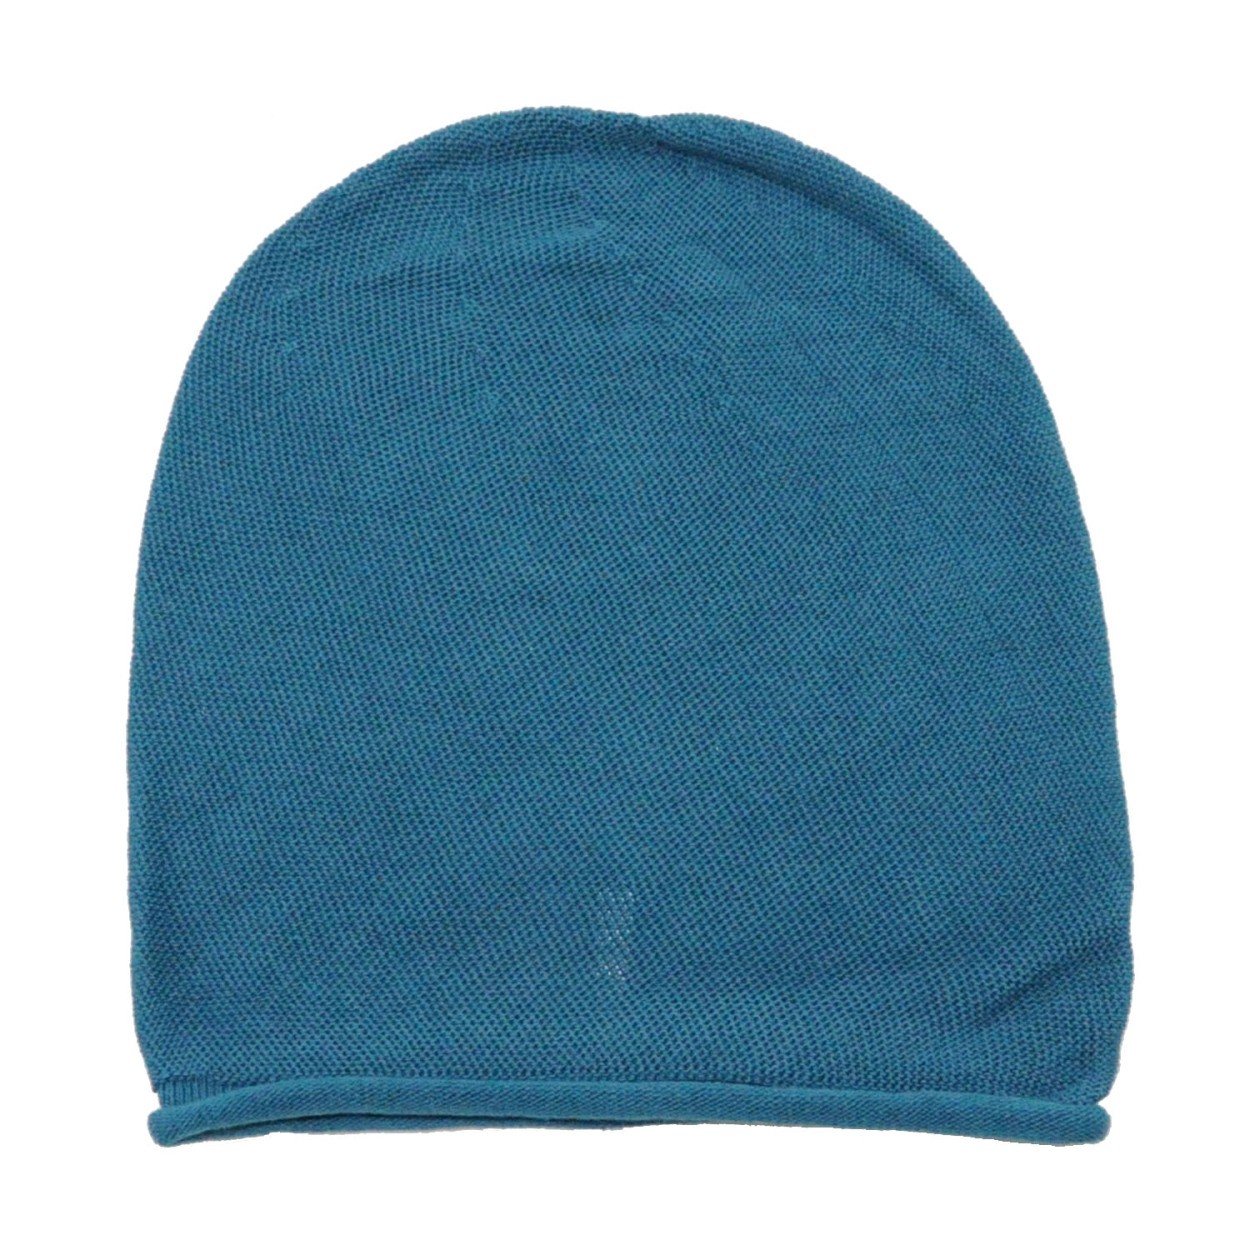 帽子 サマーニット帽 メンズ ブランド オーガニックコットン 日本製 EdgeCity ニット帽